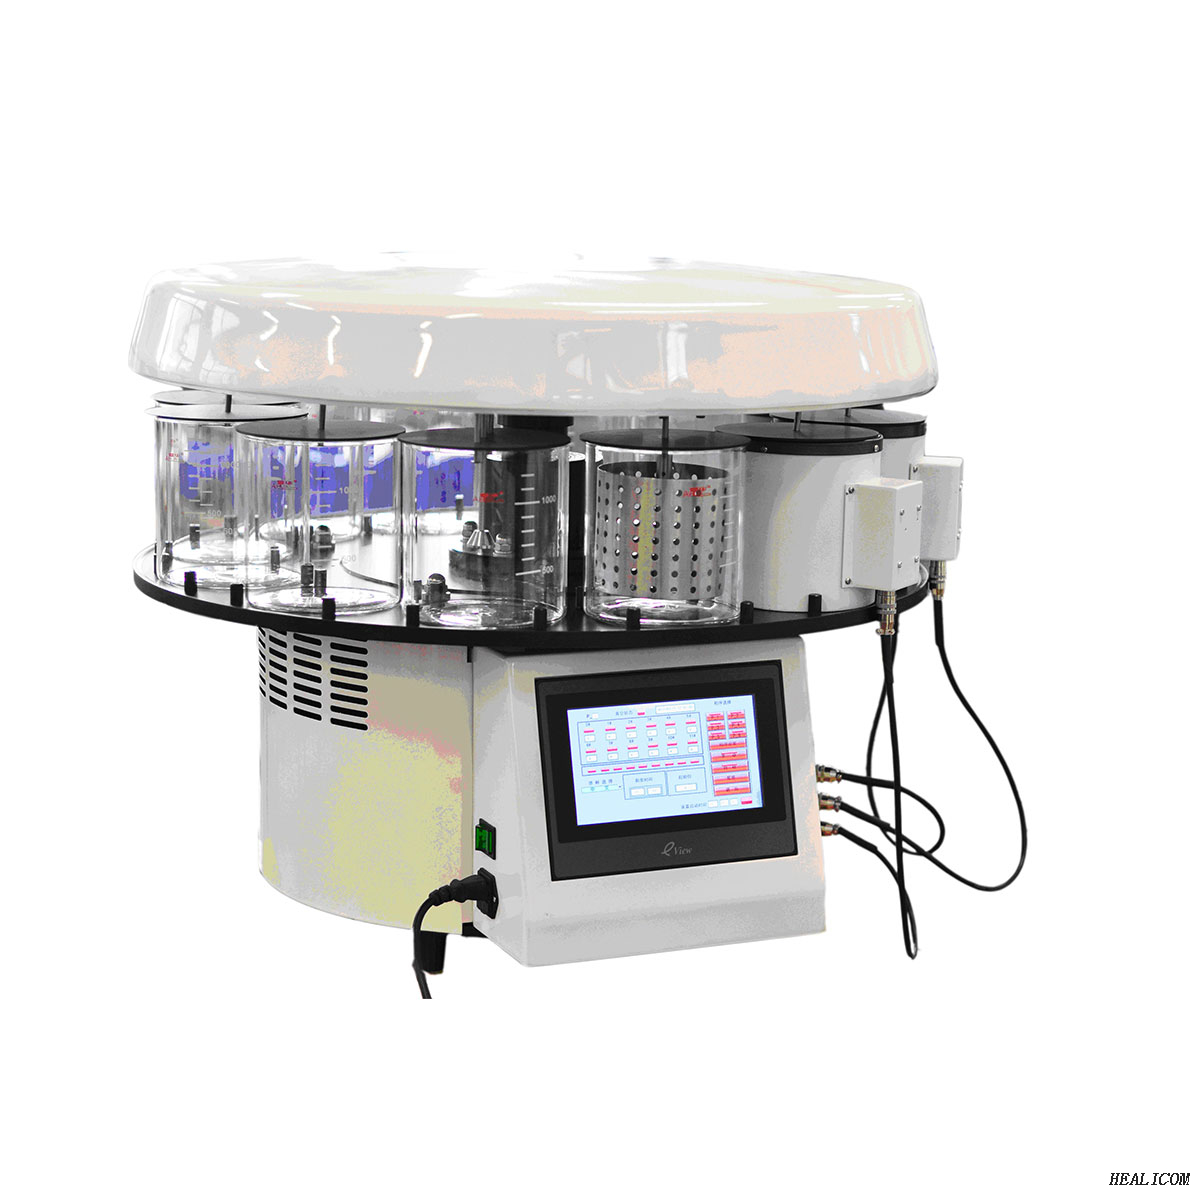 Patologia Attrezzatura da laboratorio HAD-1C Macchina automatica per la disidratazione Processore automatico dei tessuti (vuoto)